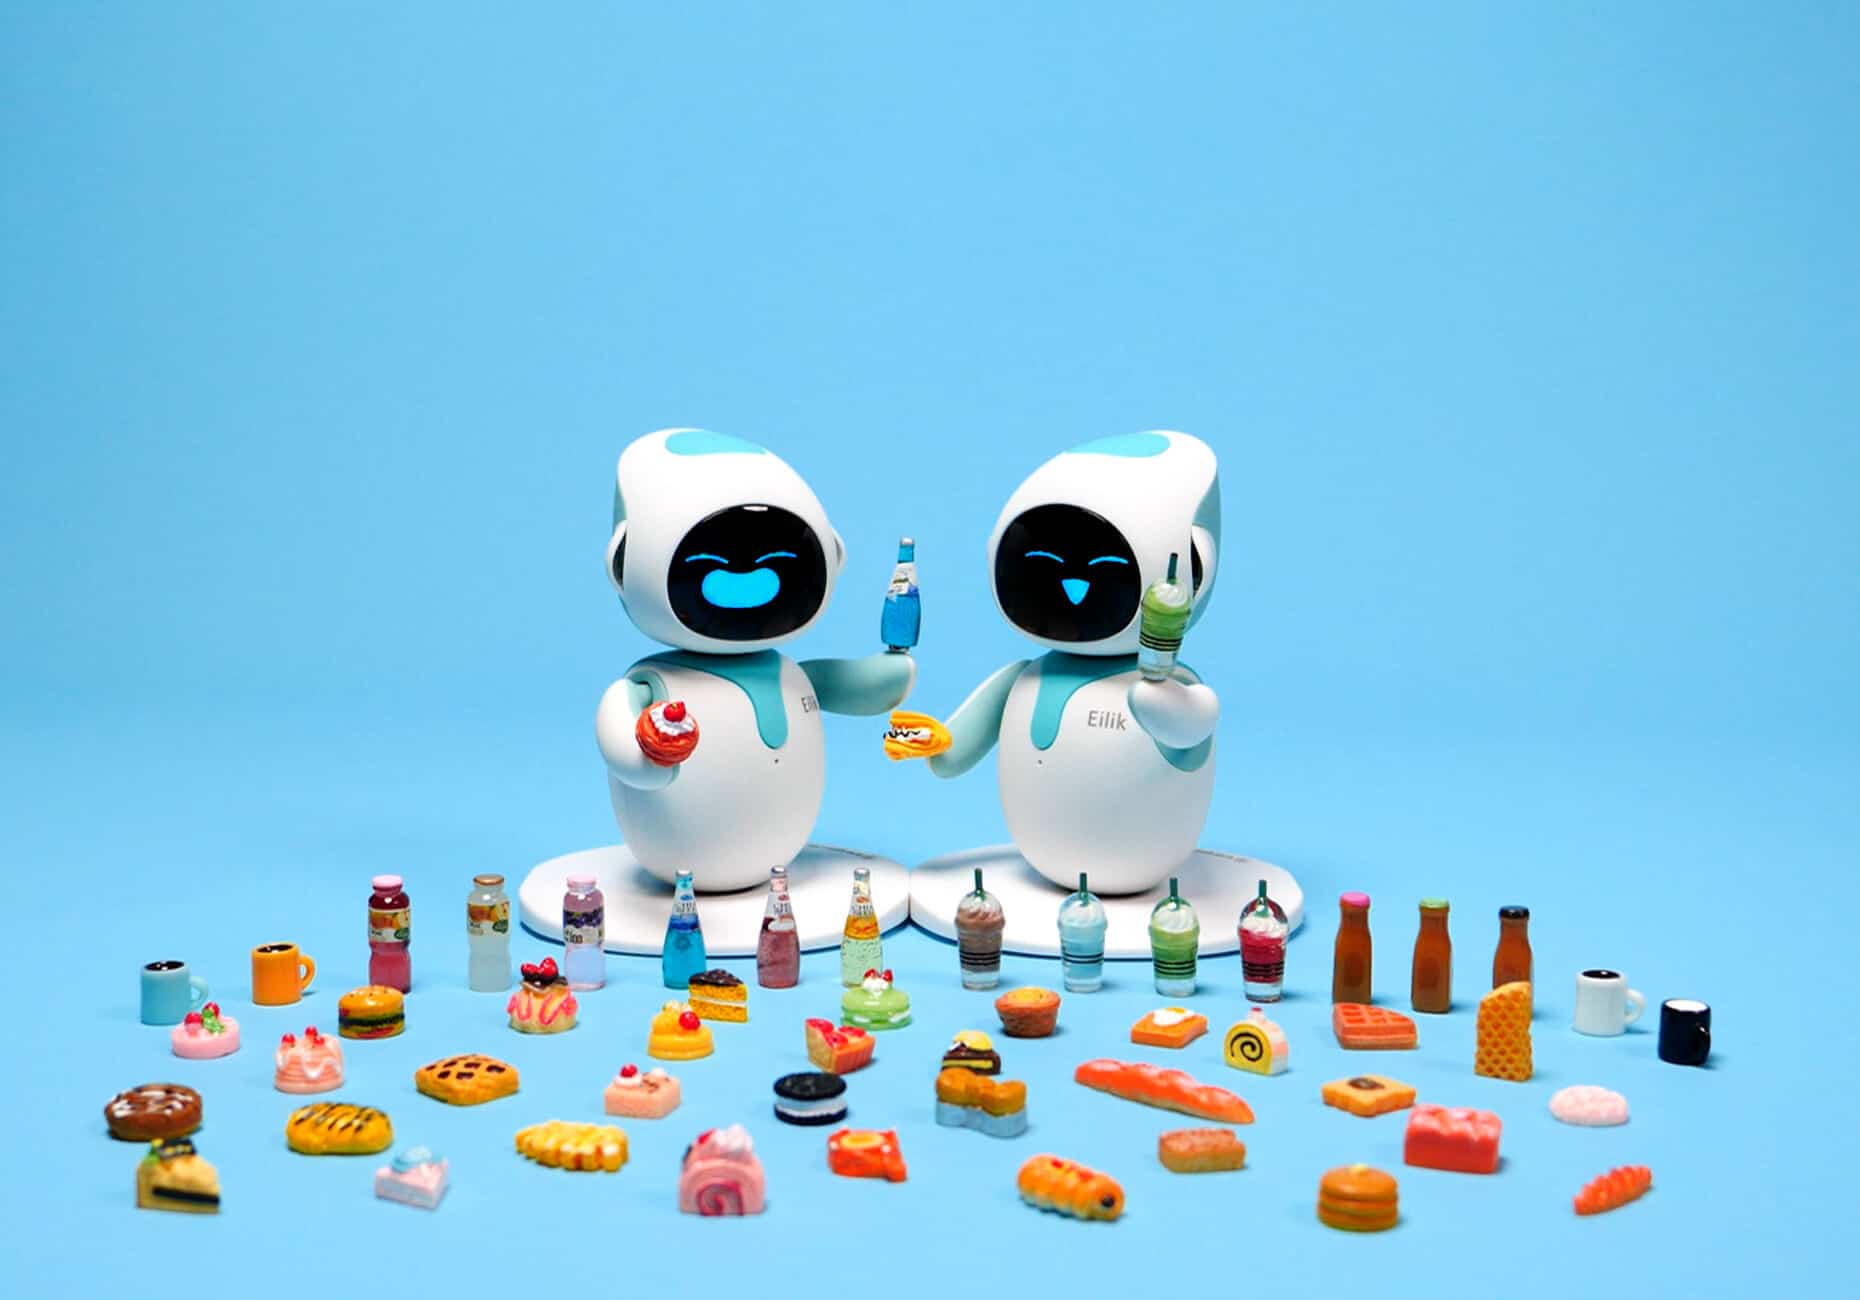 Buy eilik emo robot toy Online Costa Rica